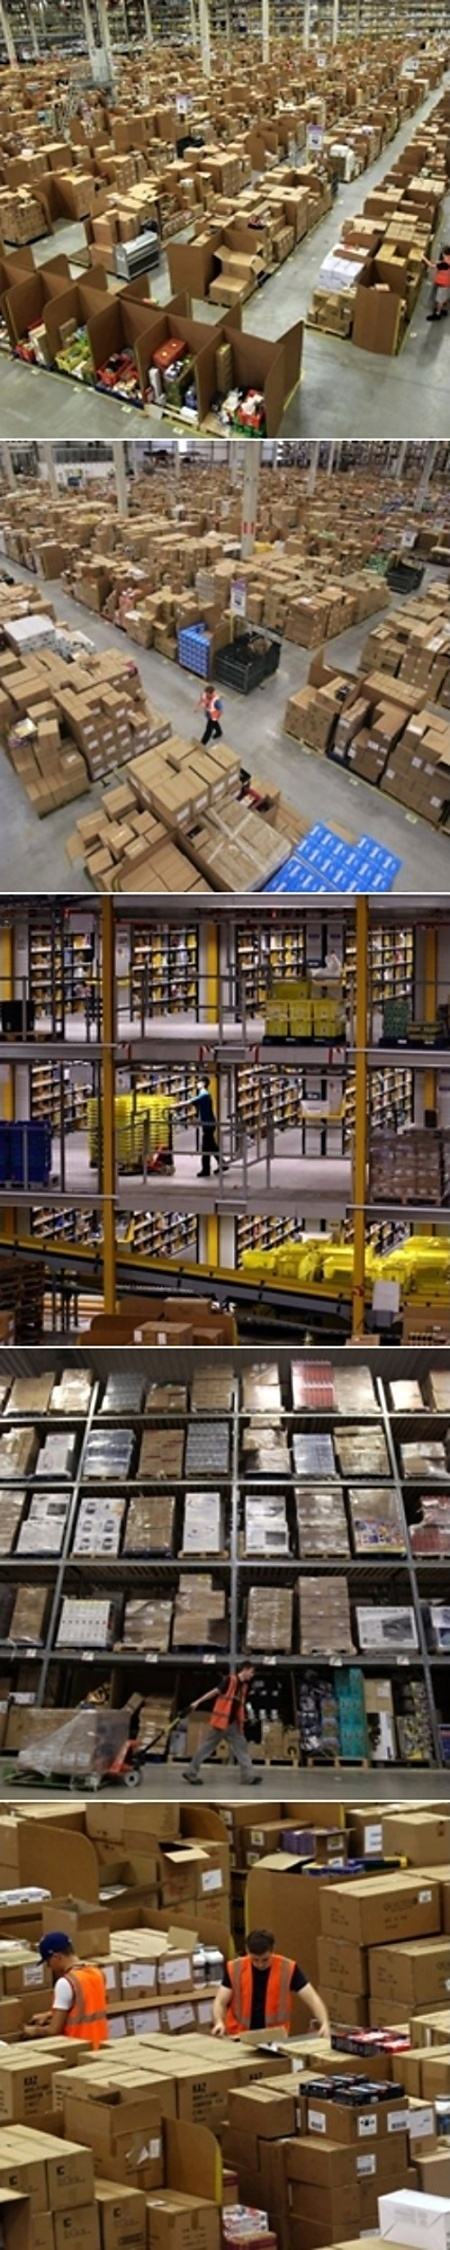 Obrázek Amazon coms Gigantic Warehouse